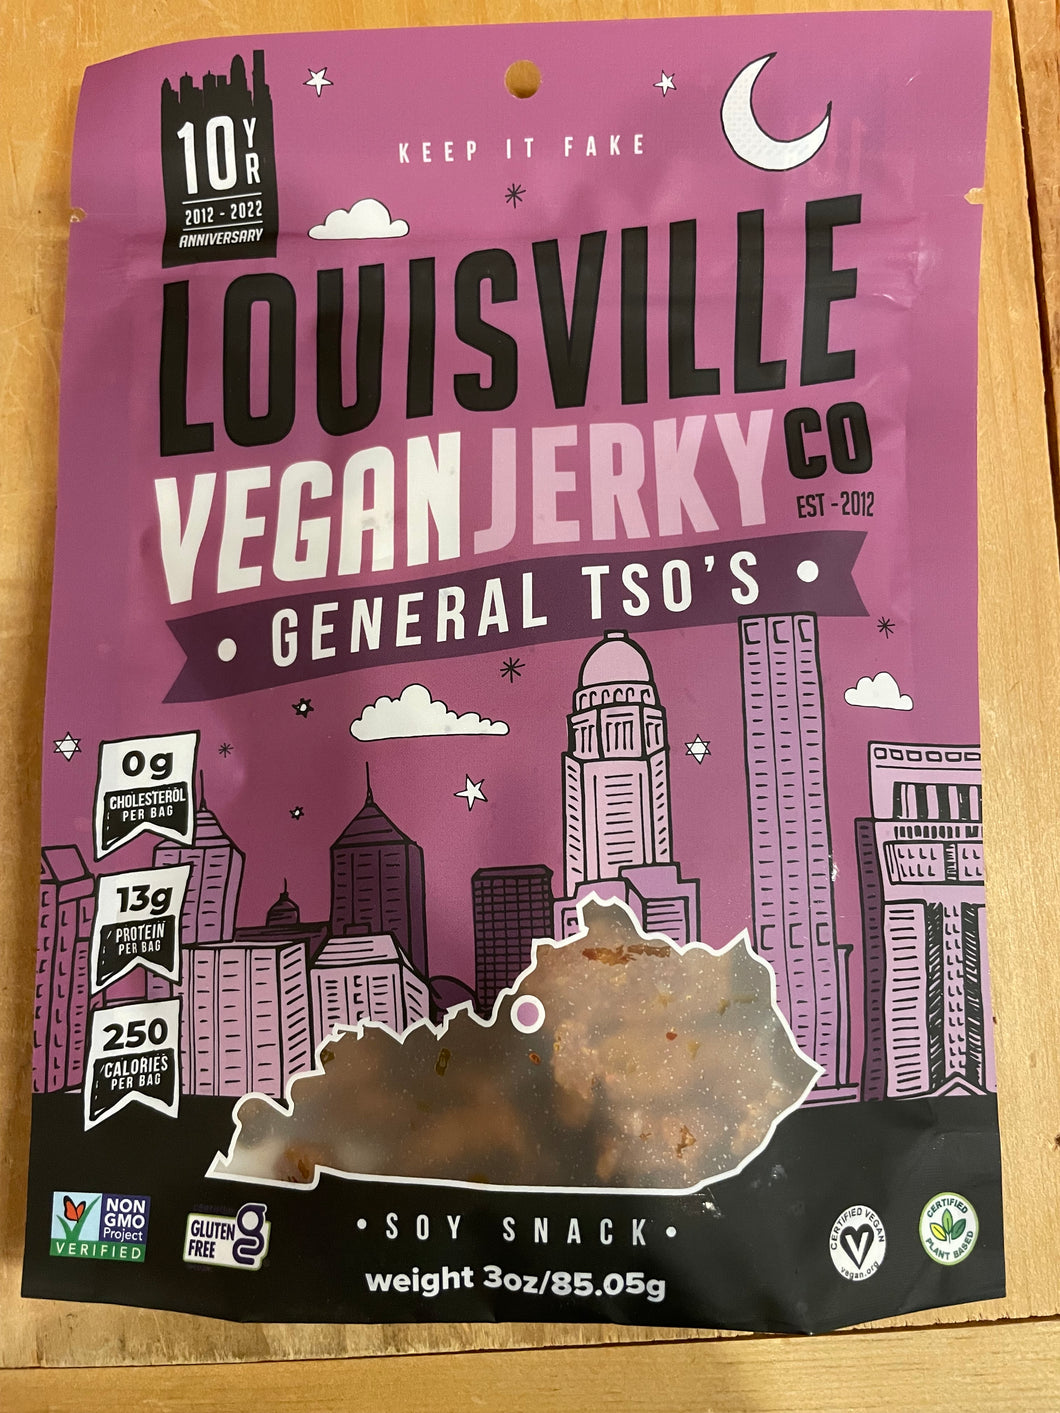 Vegan Jerky - Louisville General TSO's